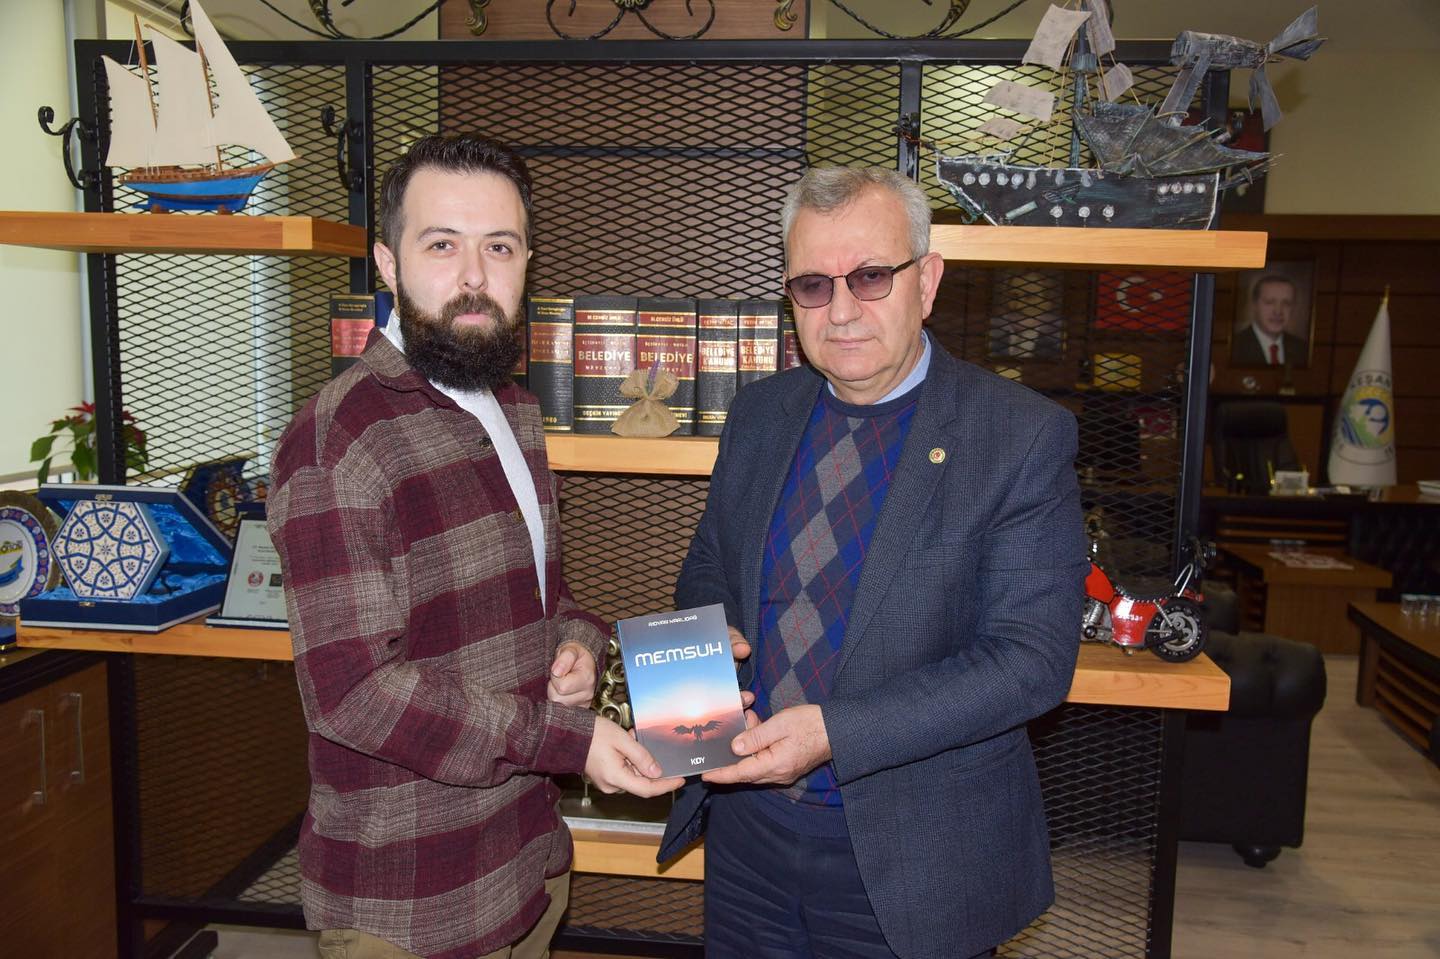 Keşanlı Yazar Rıdvan Karlıdağ, Helvacıoğlu’na” Memsuh” adlı kitabını hediye etti